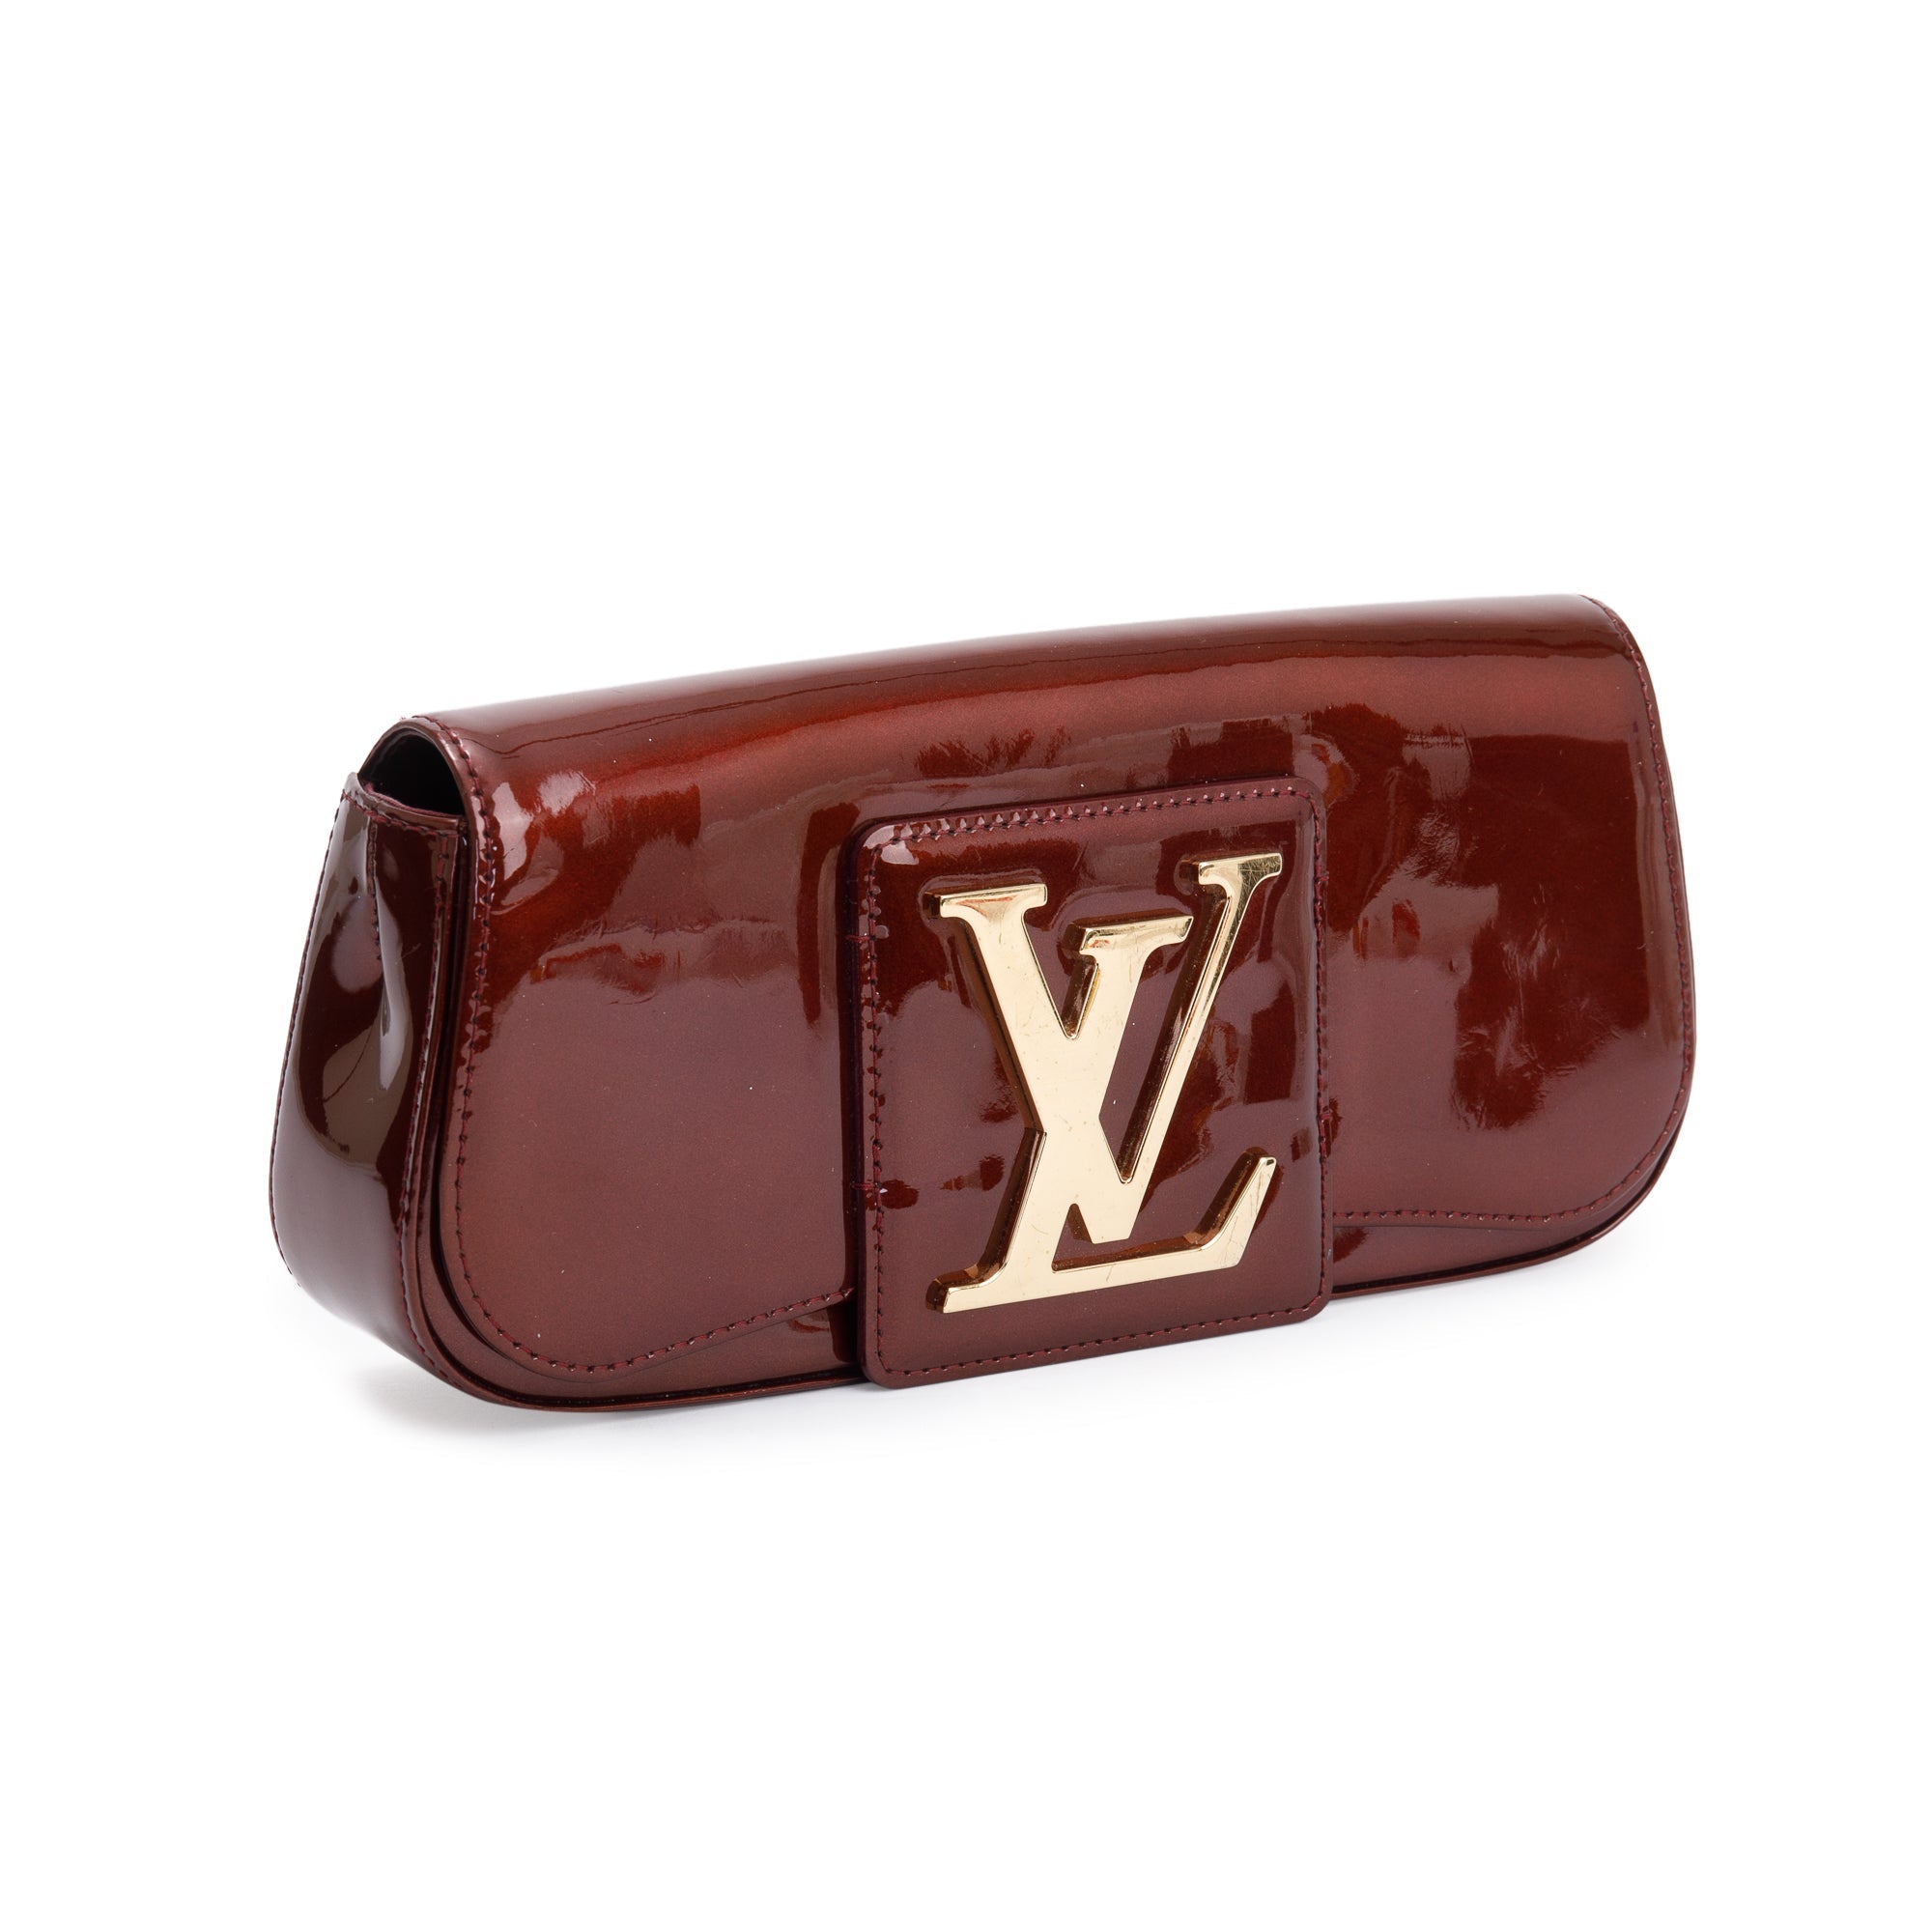 Authentic LOUIS VUITTON Vernis Sobe Clutch Bordeaux LV Bag.